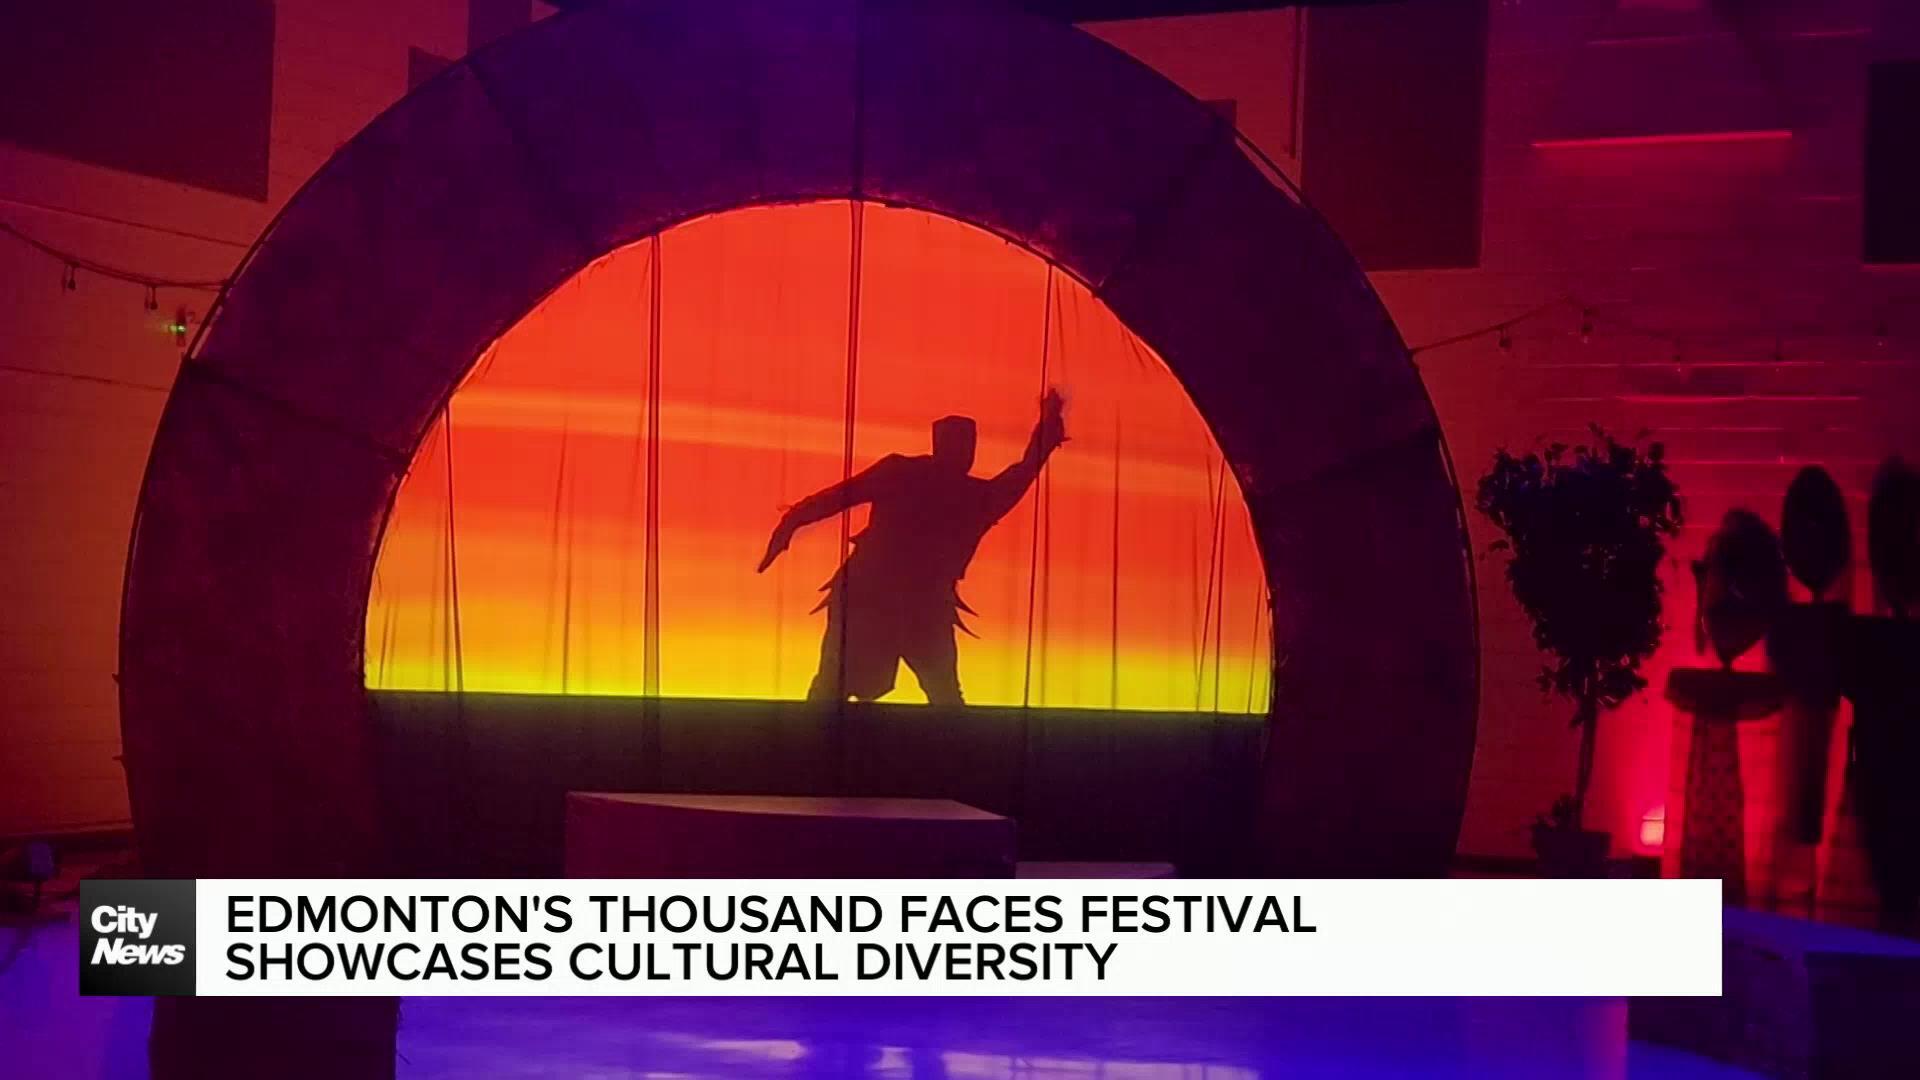 Edmonton’s Thousand Faces festival showcases cultural diversity